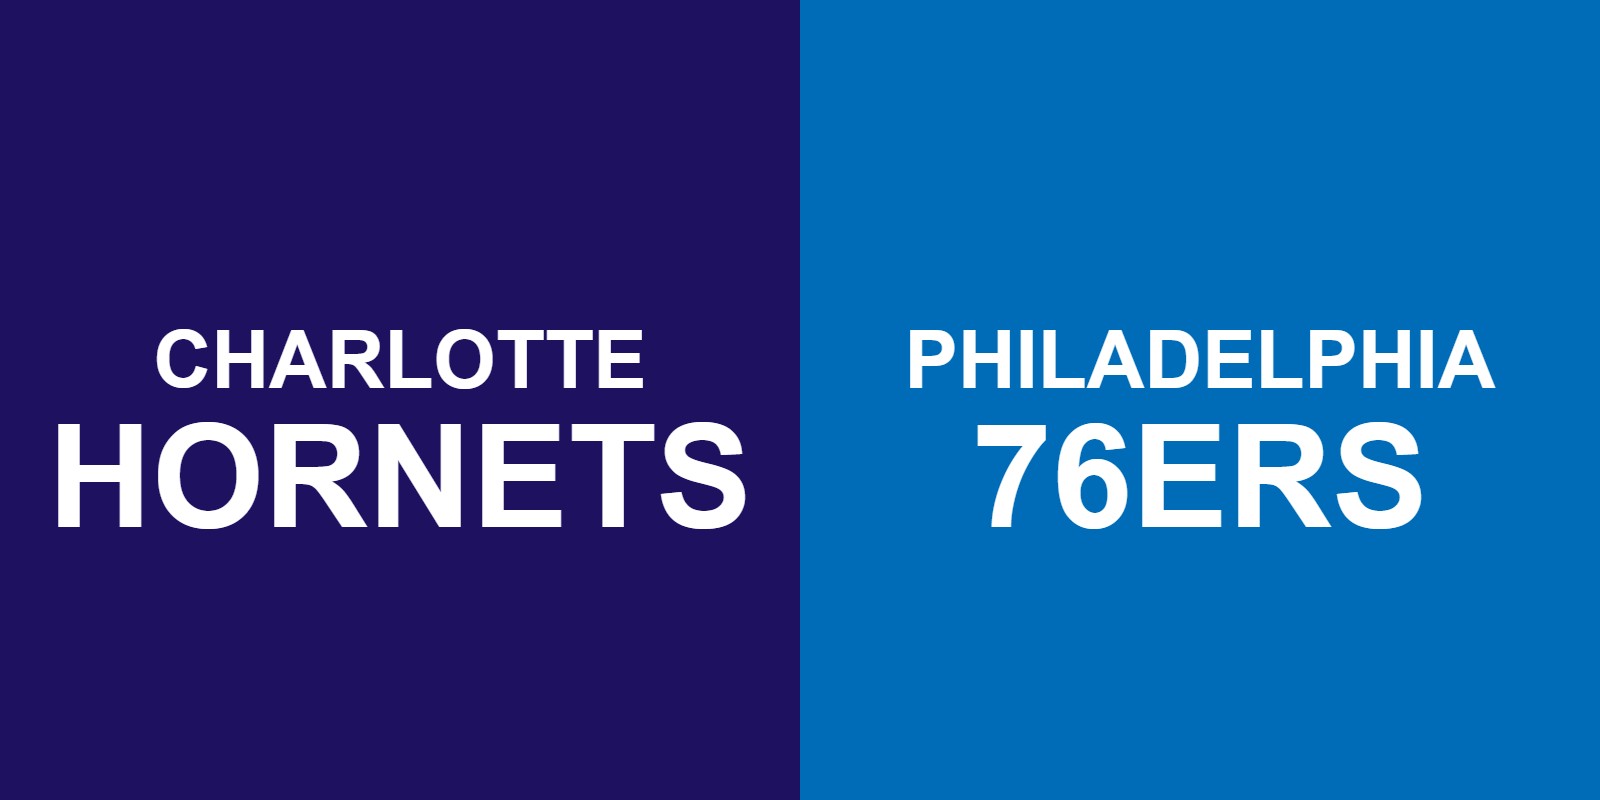 Hornets vs 76ers